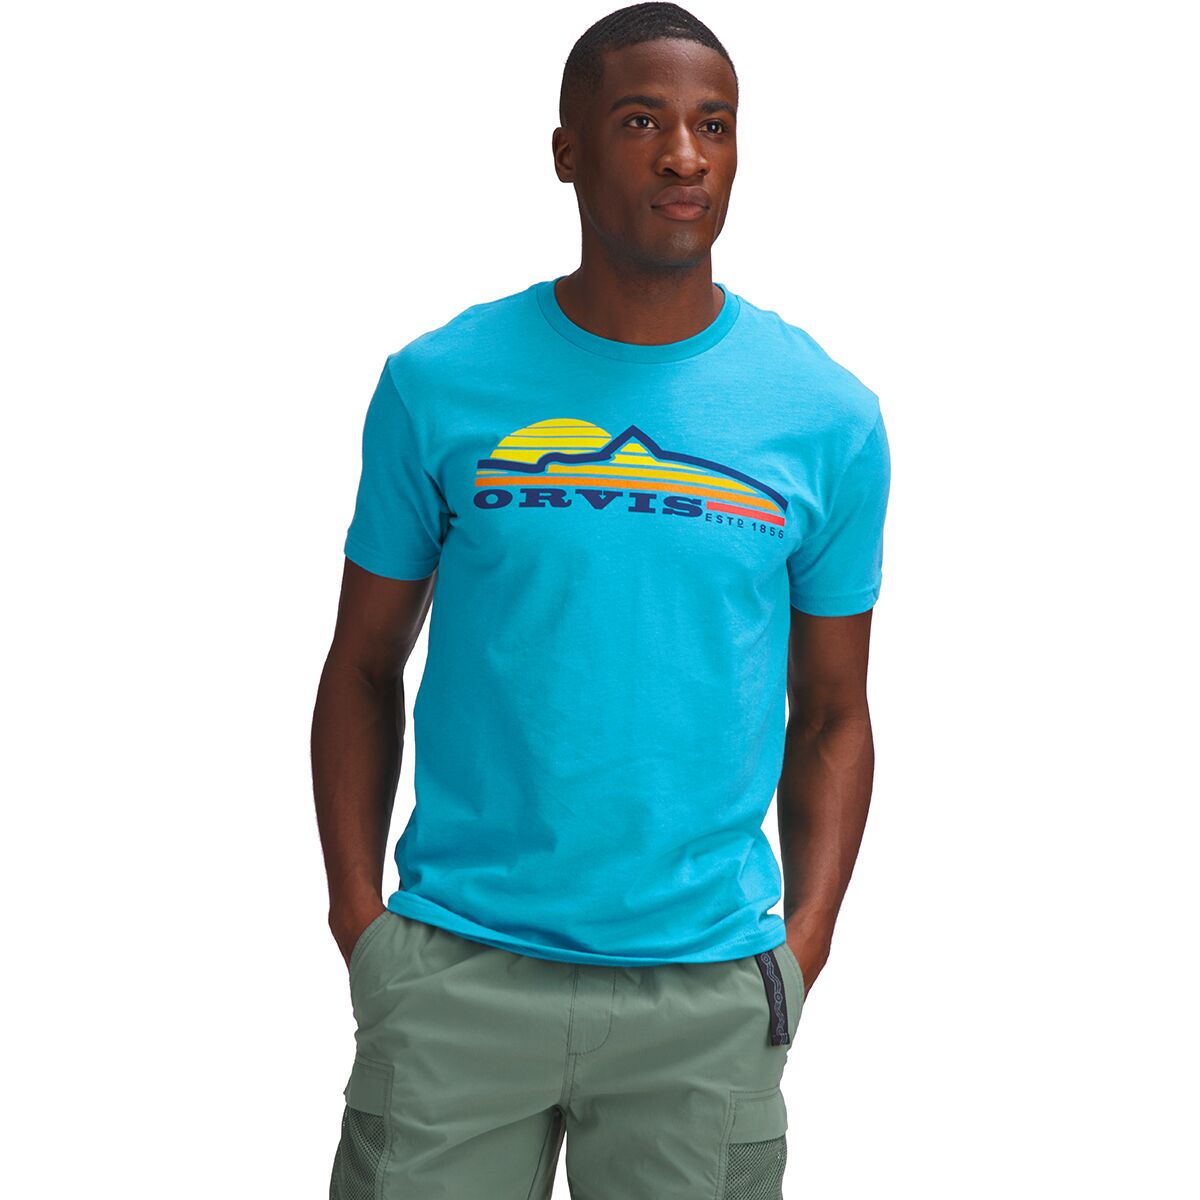 Orvis Trout Rising T-Shirt - Men's